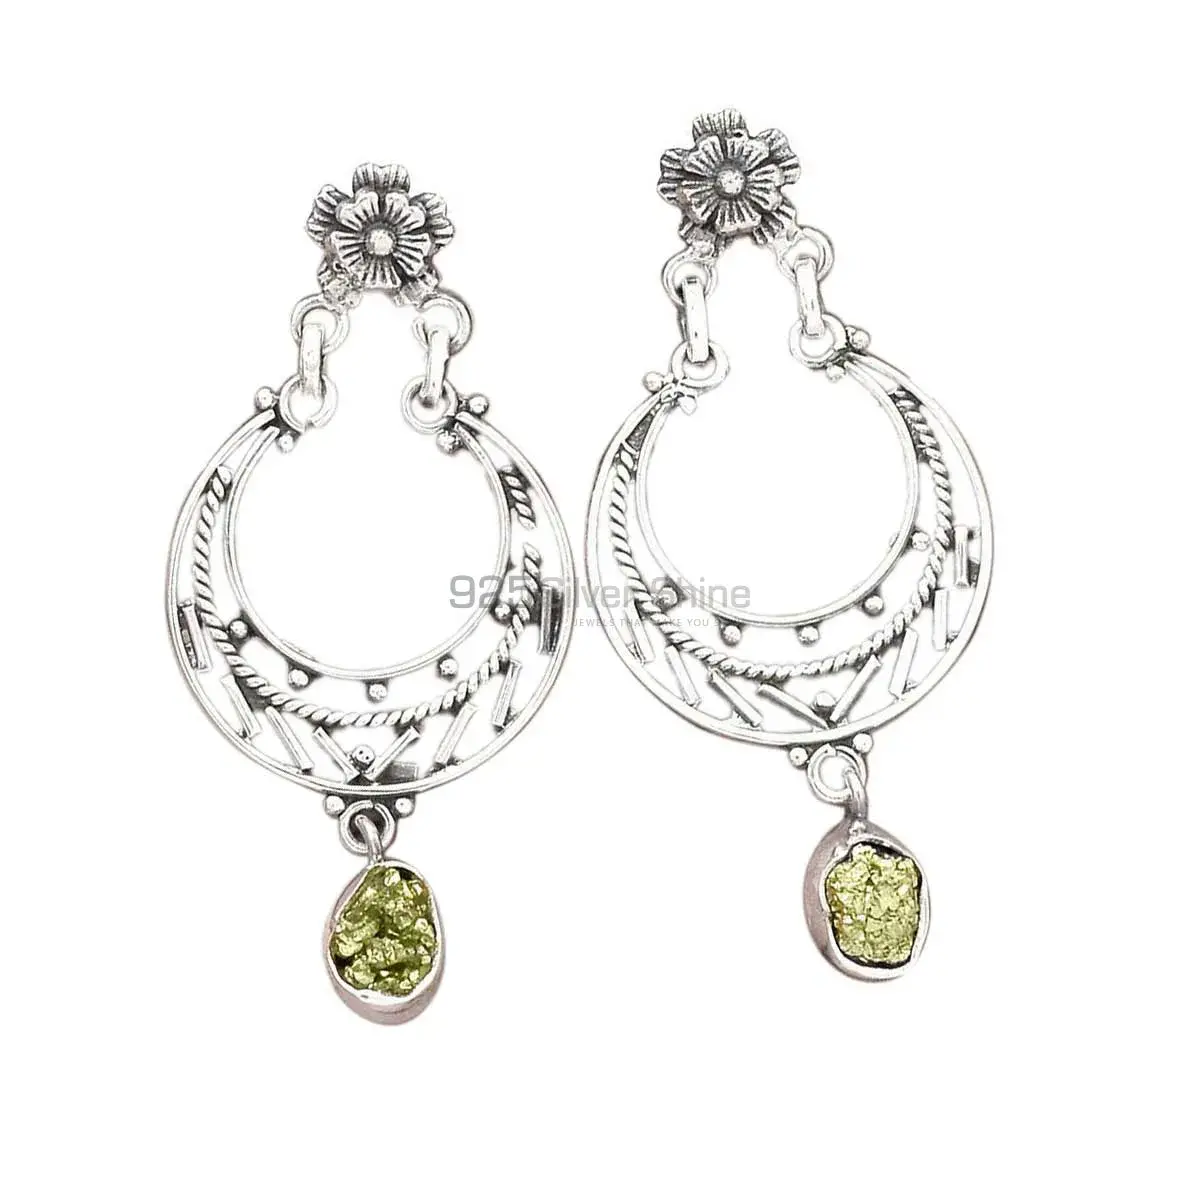 Best Design 925 Sterling Silver Earrings Wholesaler In Pyrite Druzy Gemstone Jewelry 925SE3107